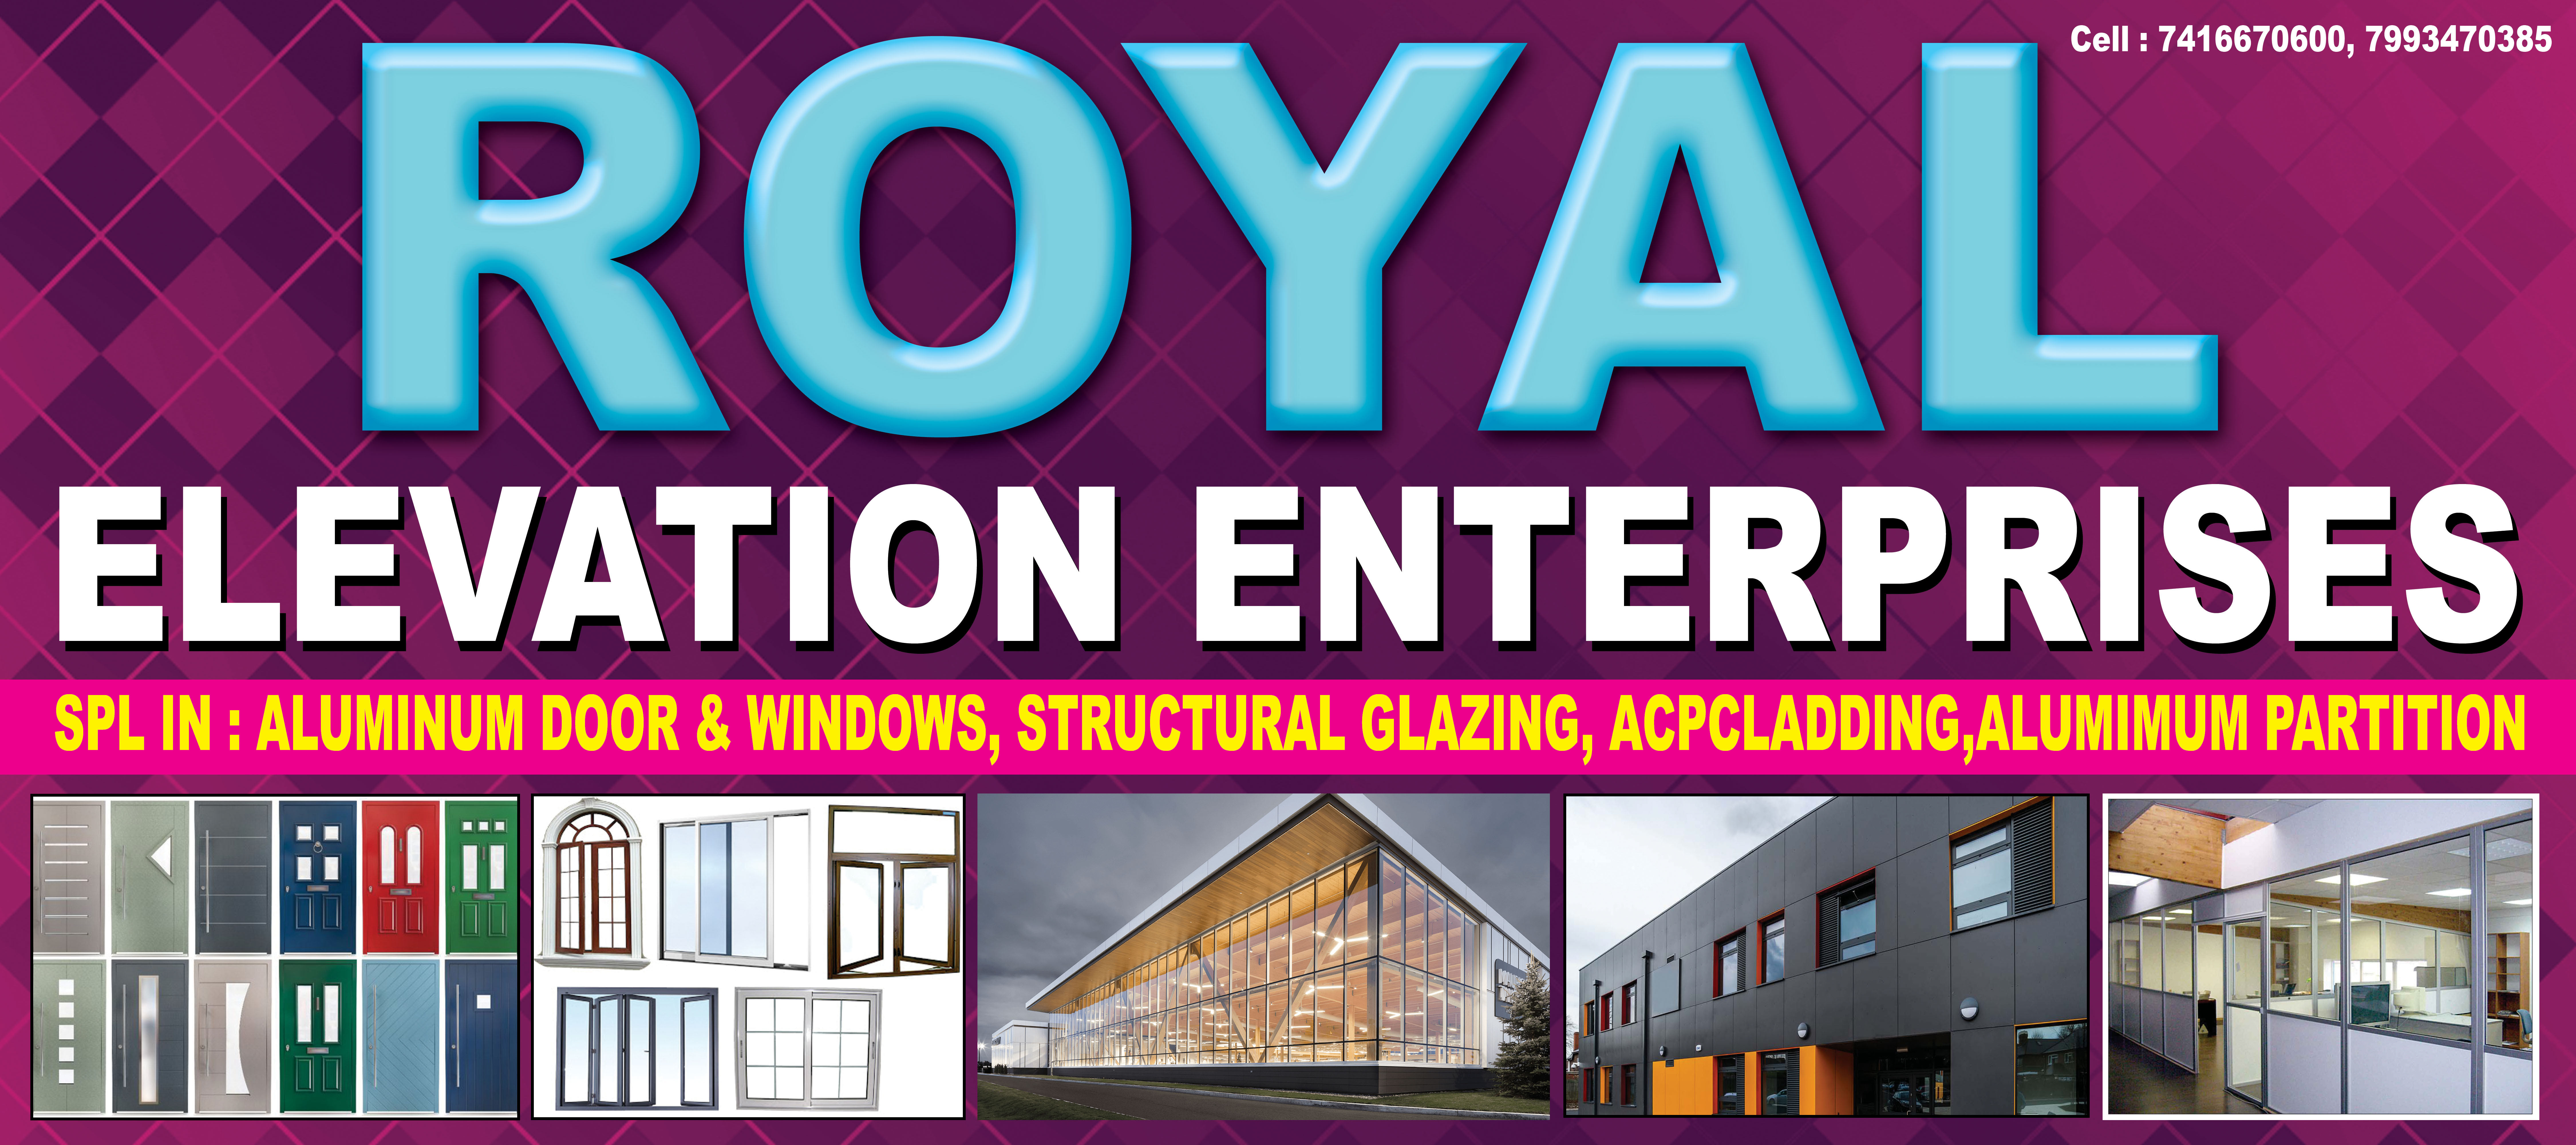 Business logo of ROYAL ELEVATION ENTERPRISES